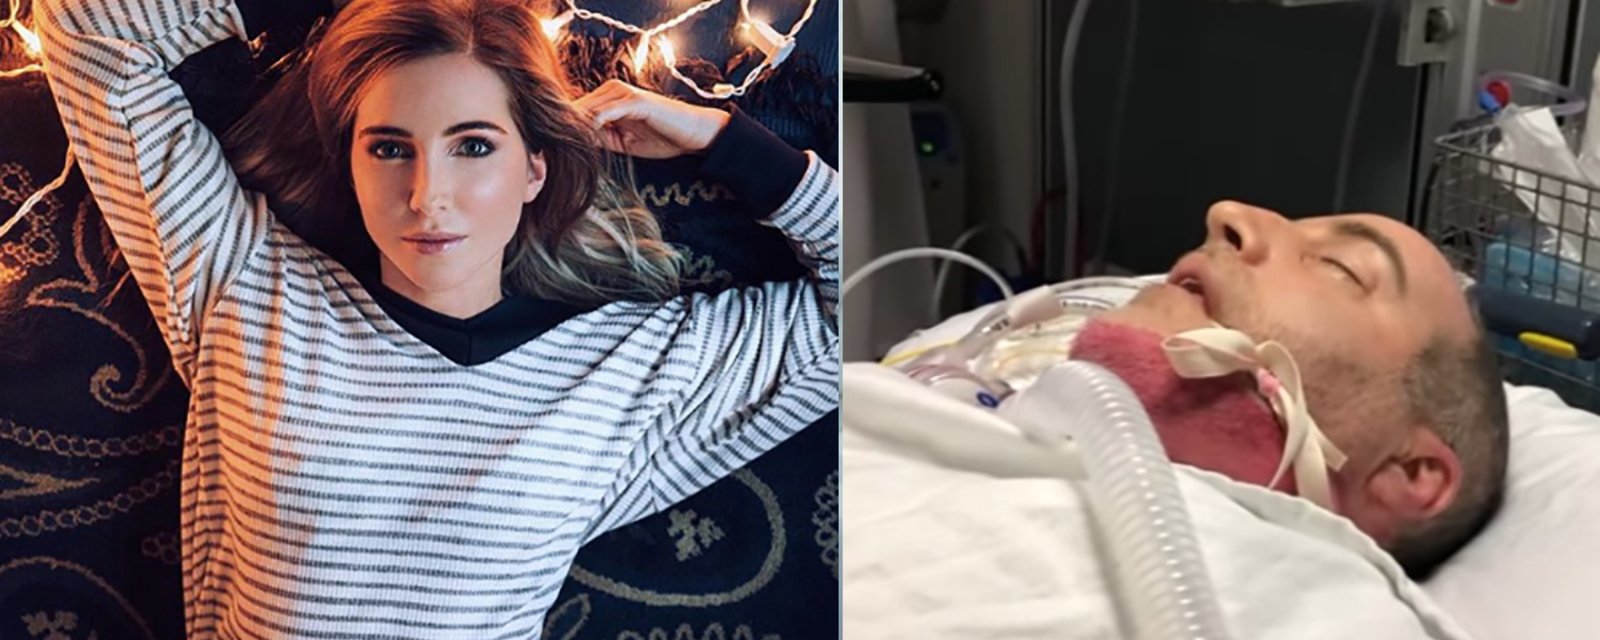 Jessie d'OD publie une bouleversante vidéo avec son père après son infarctus et une opération à coeur ouvert